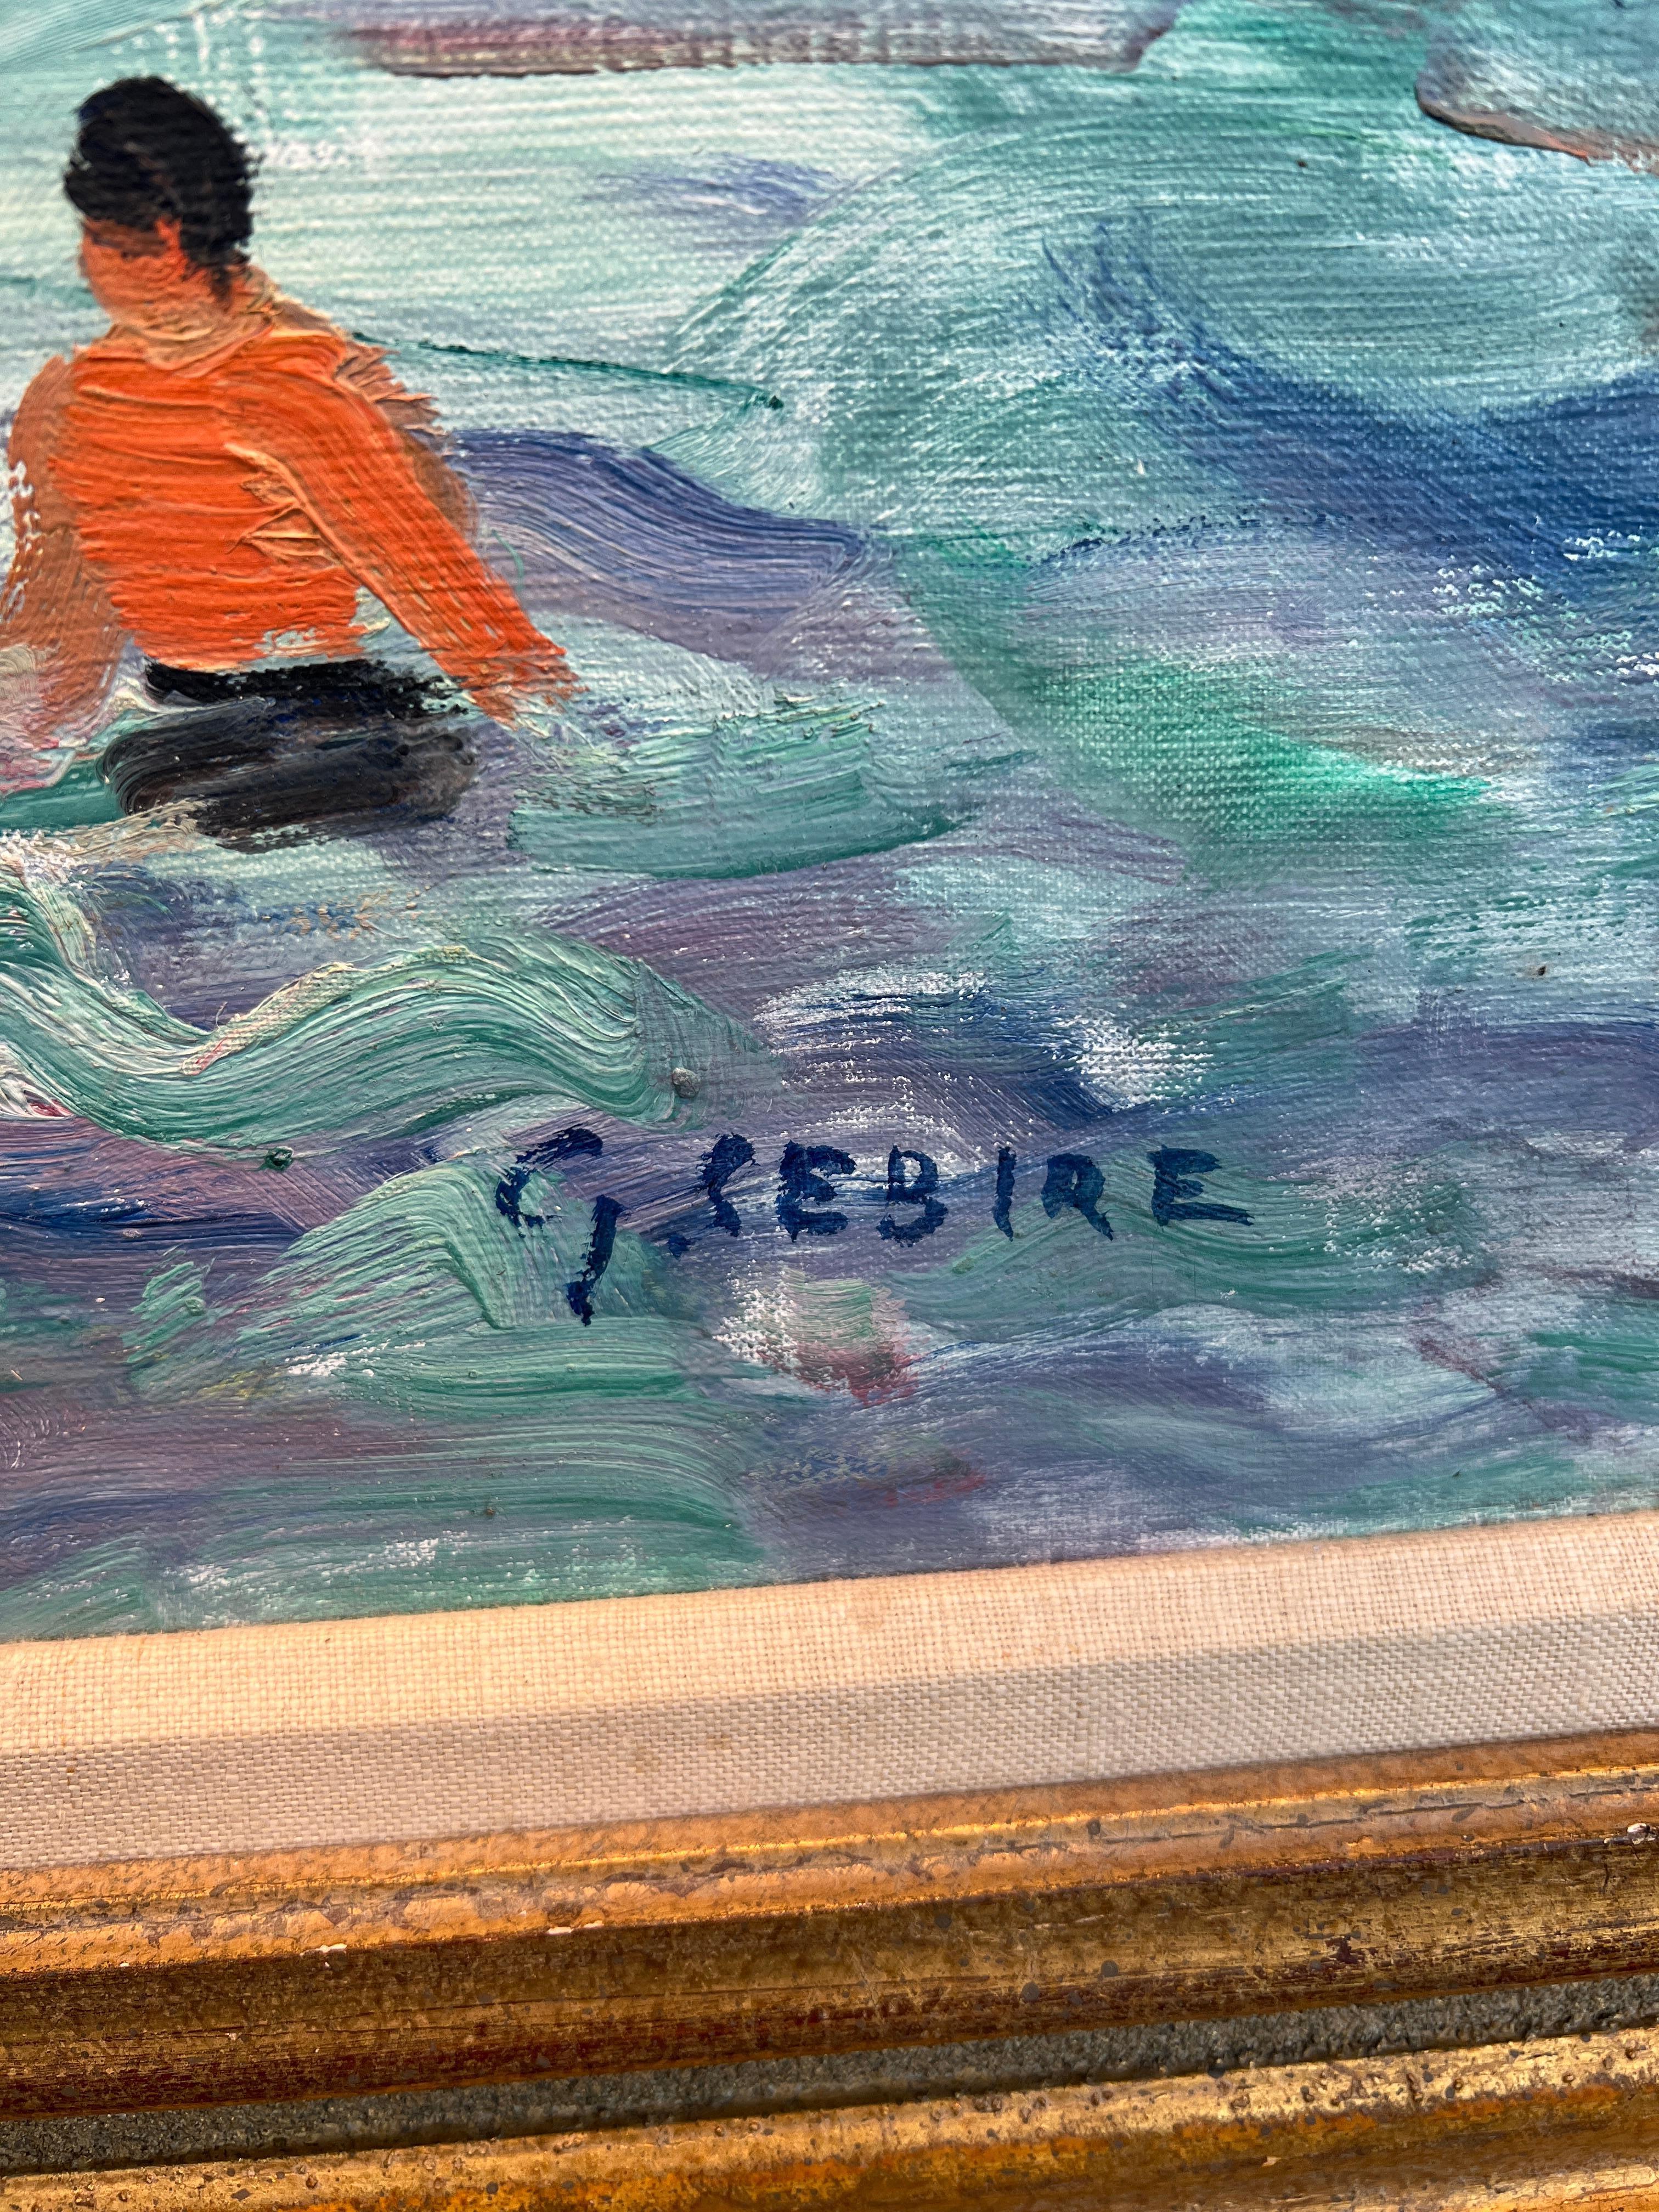 Ein Tag am Strand
Gaston Sebire (Franzose, 1920-2001)
Signiert unten rechts
29 x 36 Zoll
36,5 x 44 Zoll mit Rahmen

Gaston Sebire wurde am 18. August 1920 in Saint-Samson im Calvados geboren. Er war ein Maler von Landschaften, Seestücken, Stillleben